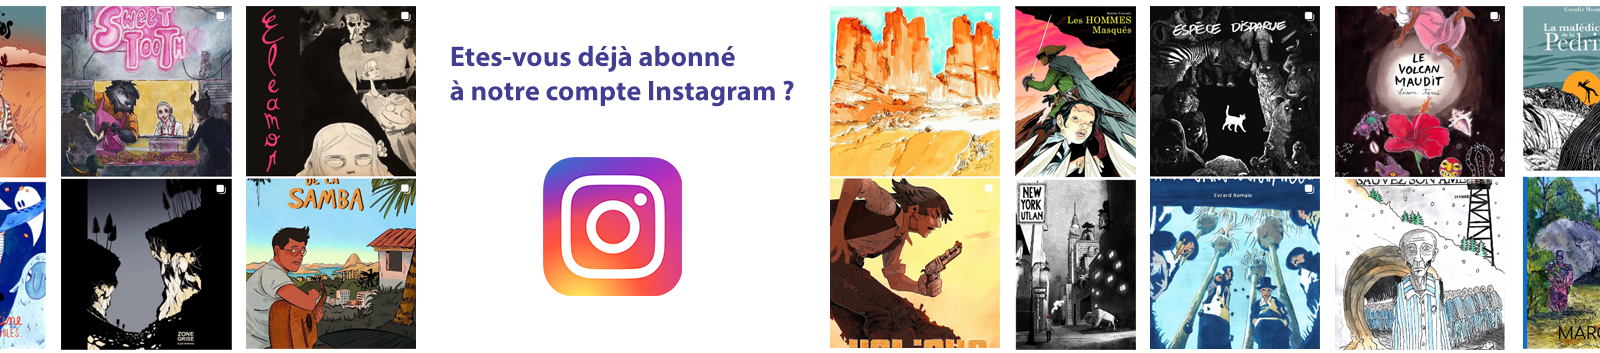 Instagram_account_HP_banner